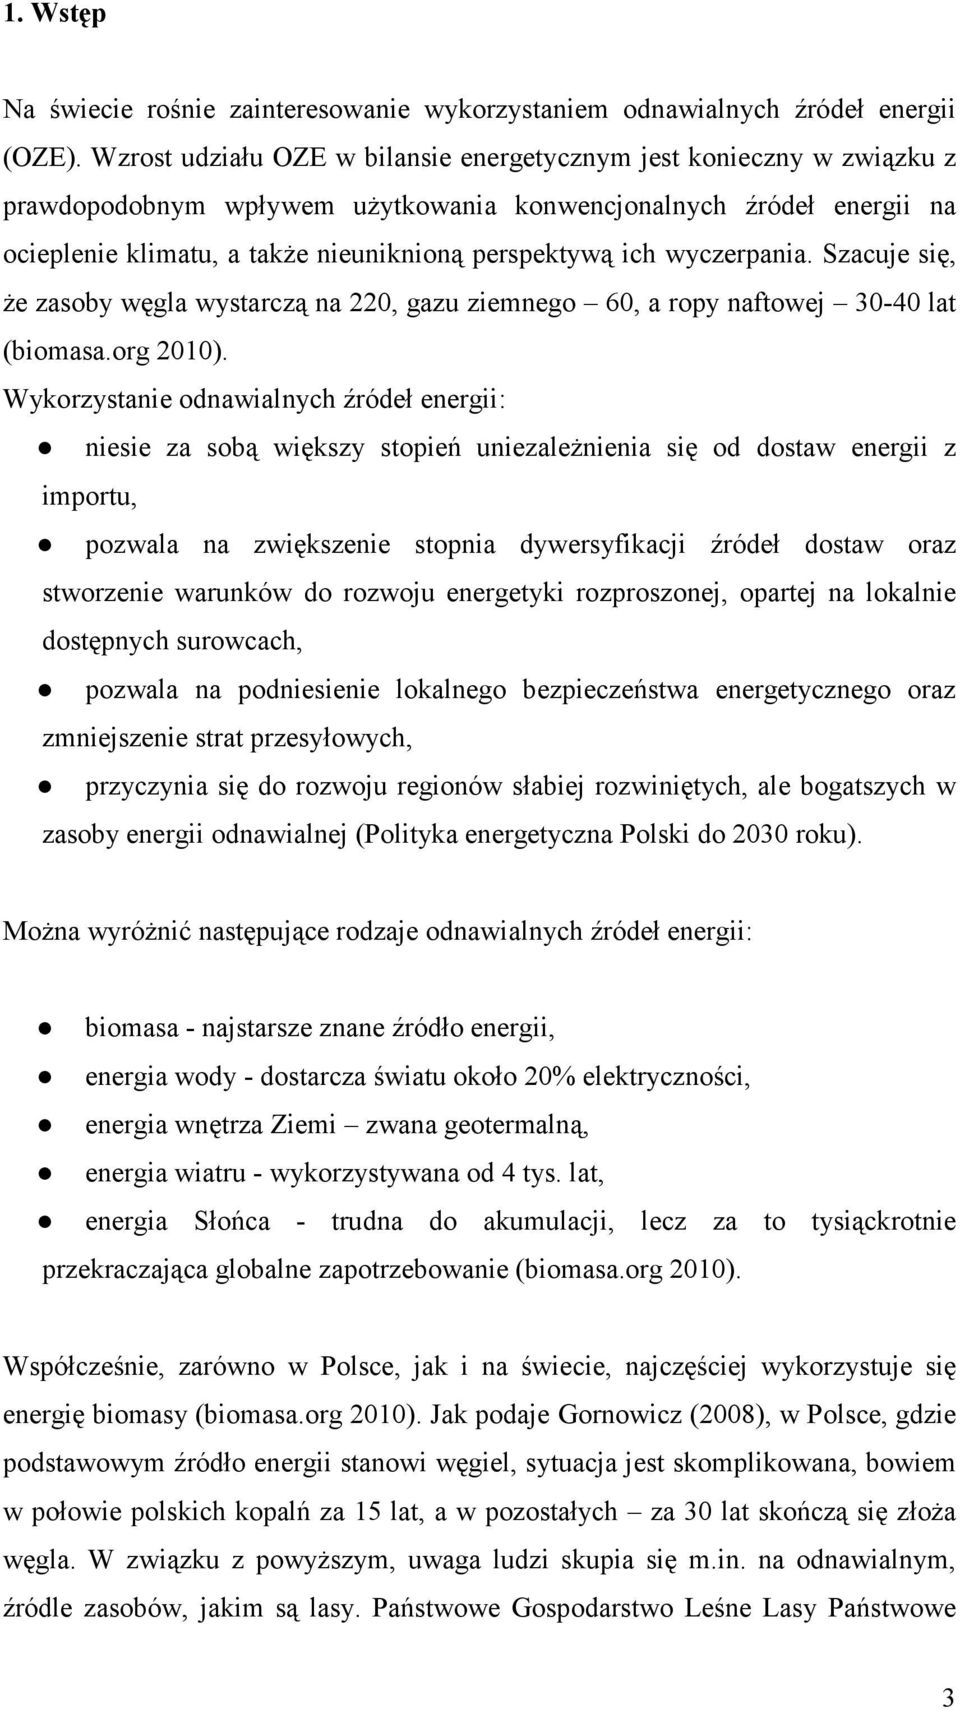 zasoby energii odnawialnej (Polityka energetyczna Polski do 2030 roku).